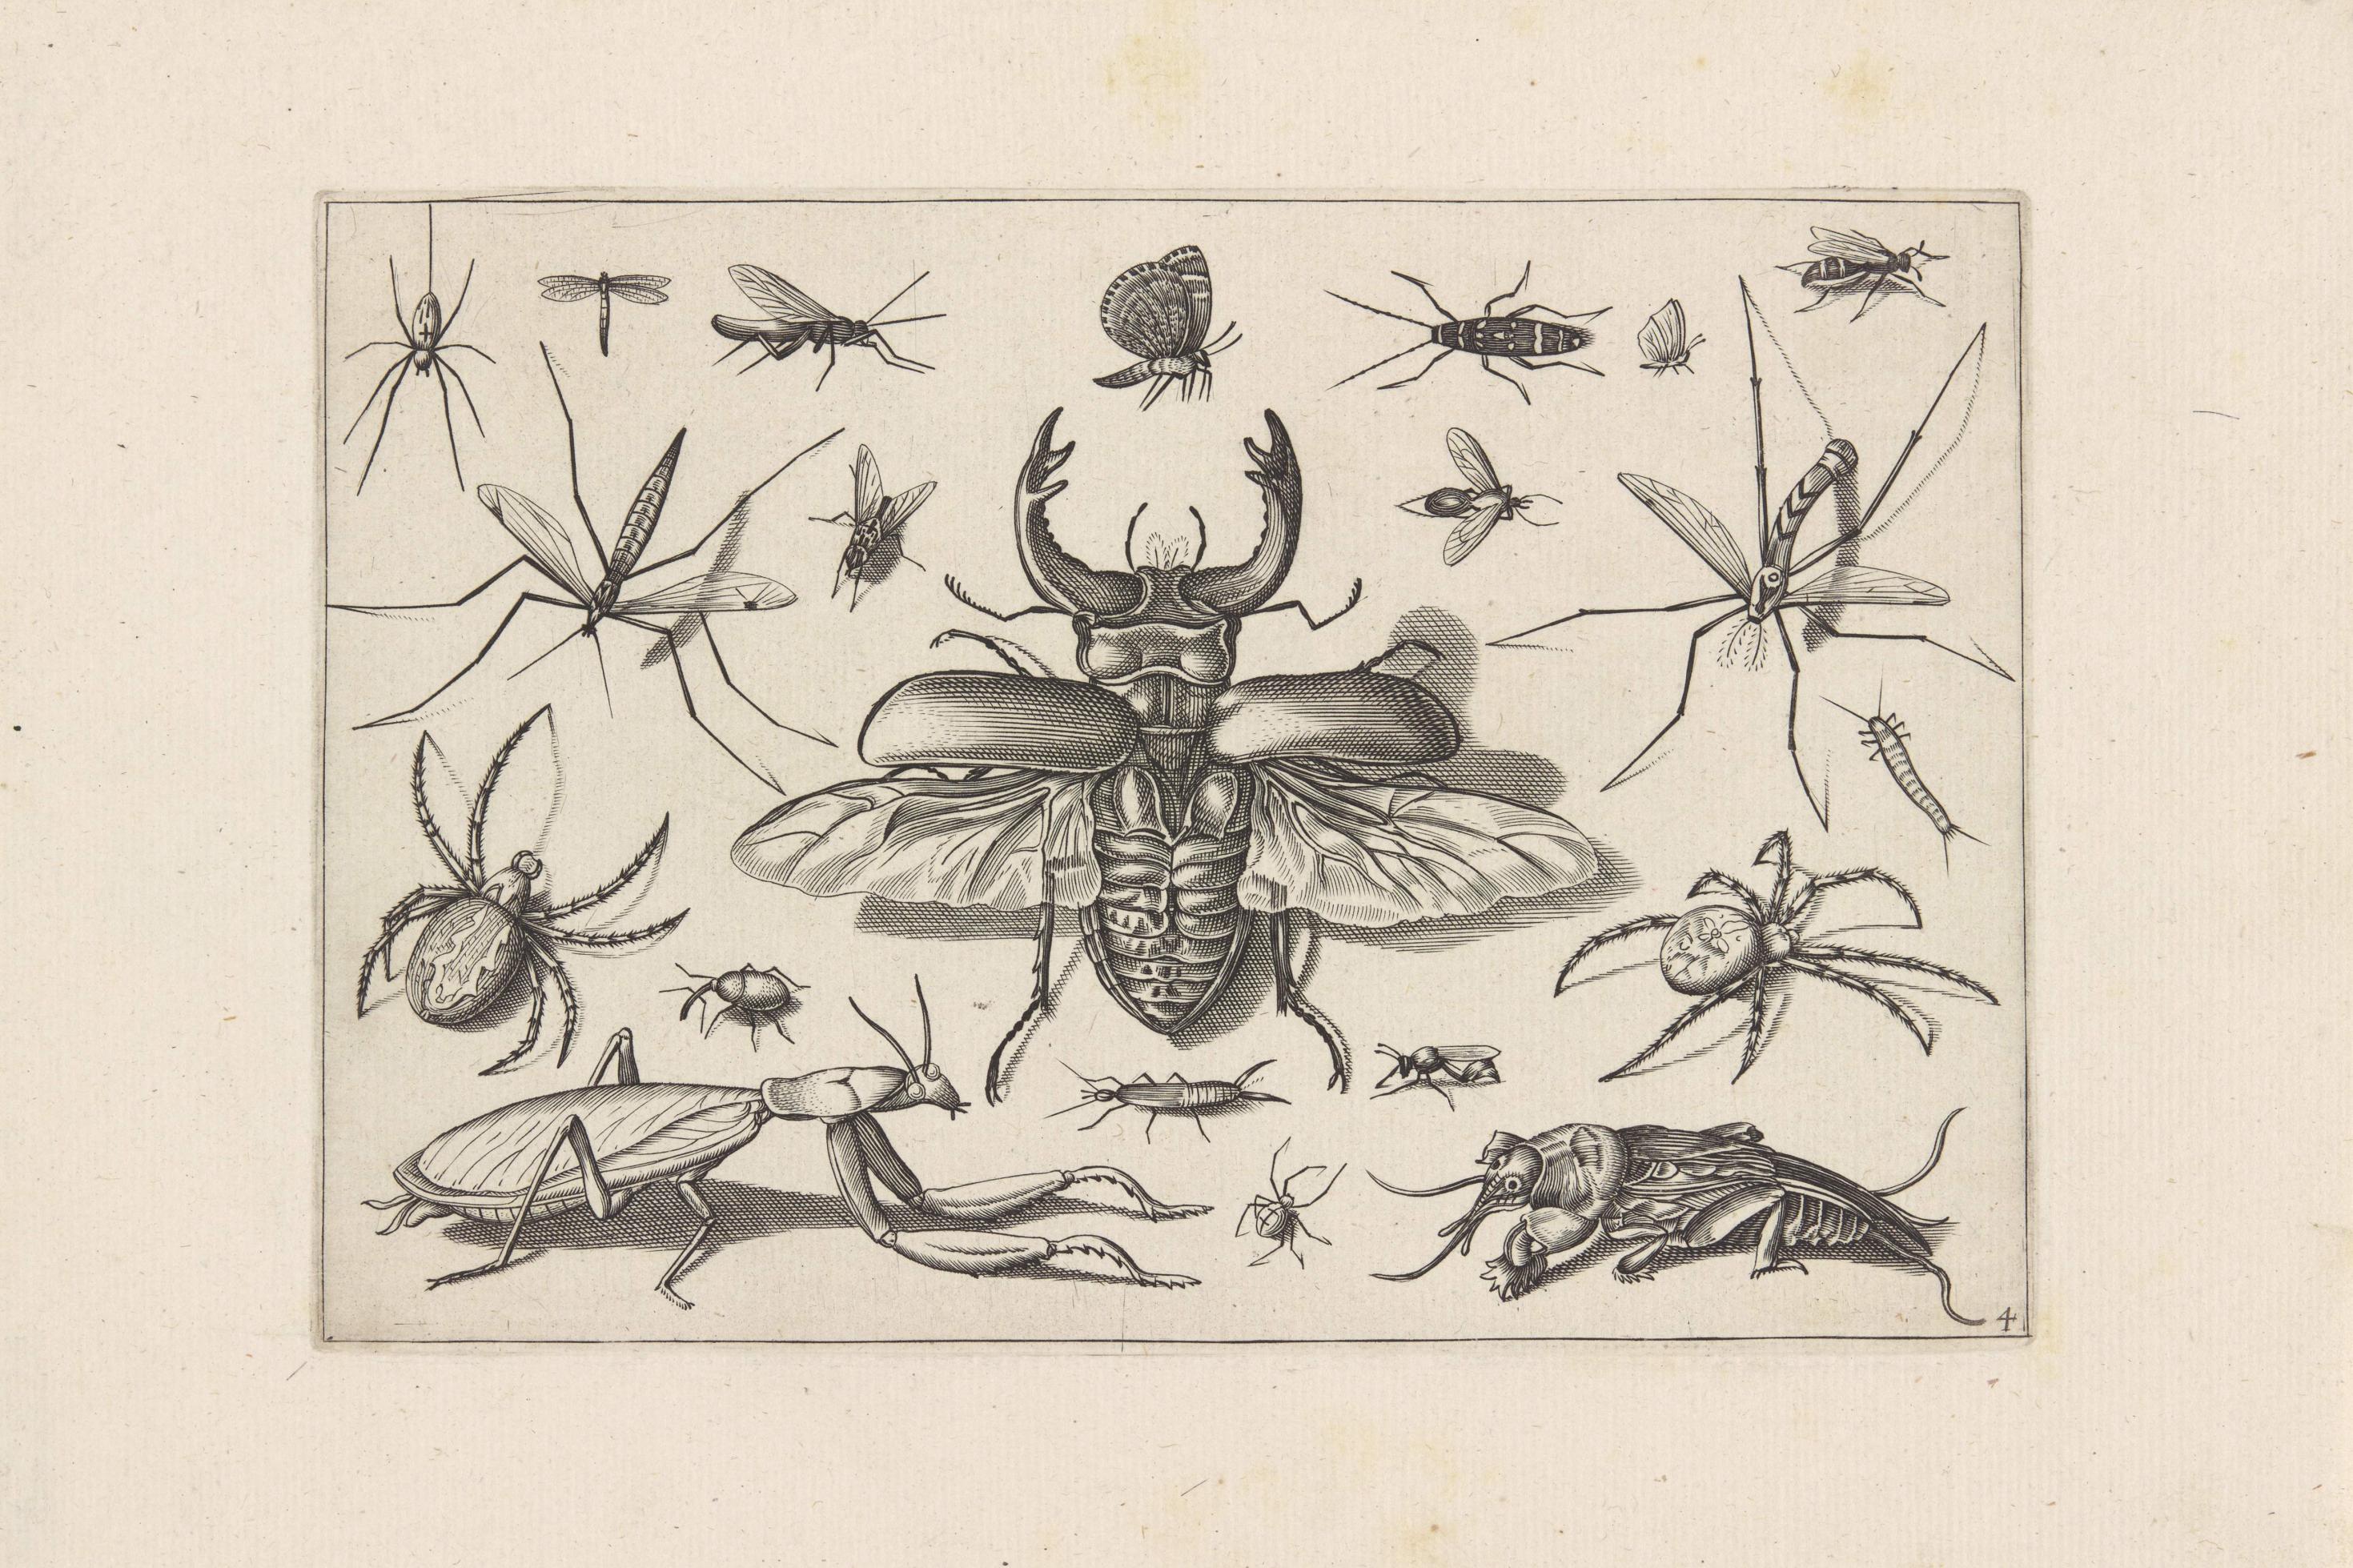 Käfer mit ausgebreiteten Flügeln, umgeben von Mücken, Spinnen, einem Wandelnden Blatt